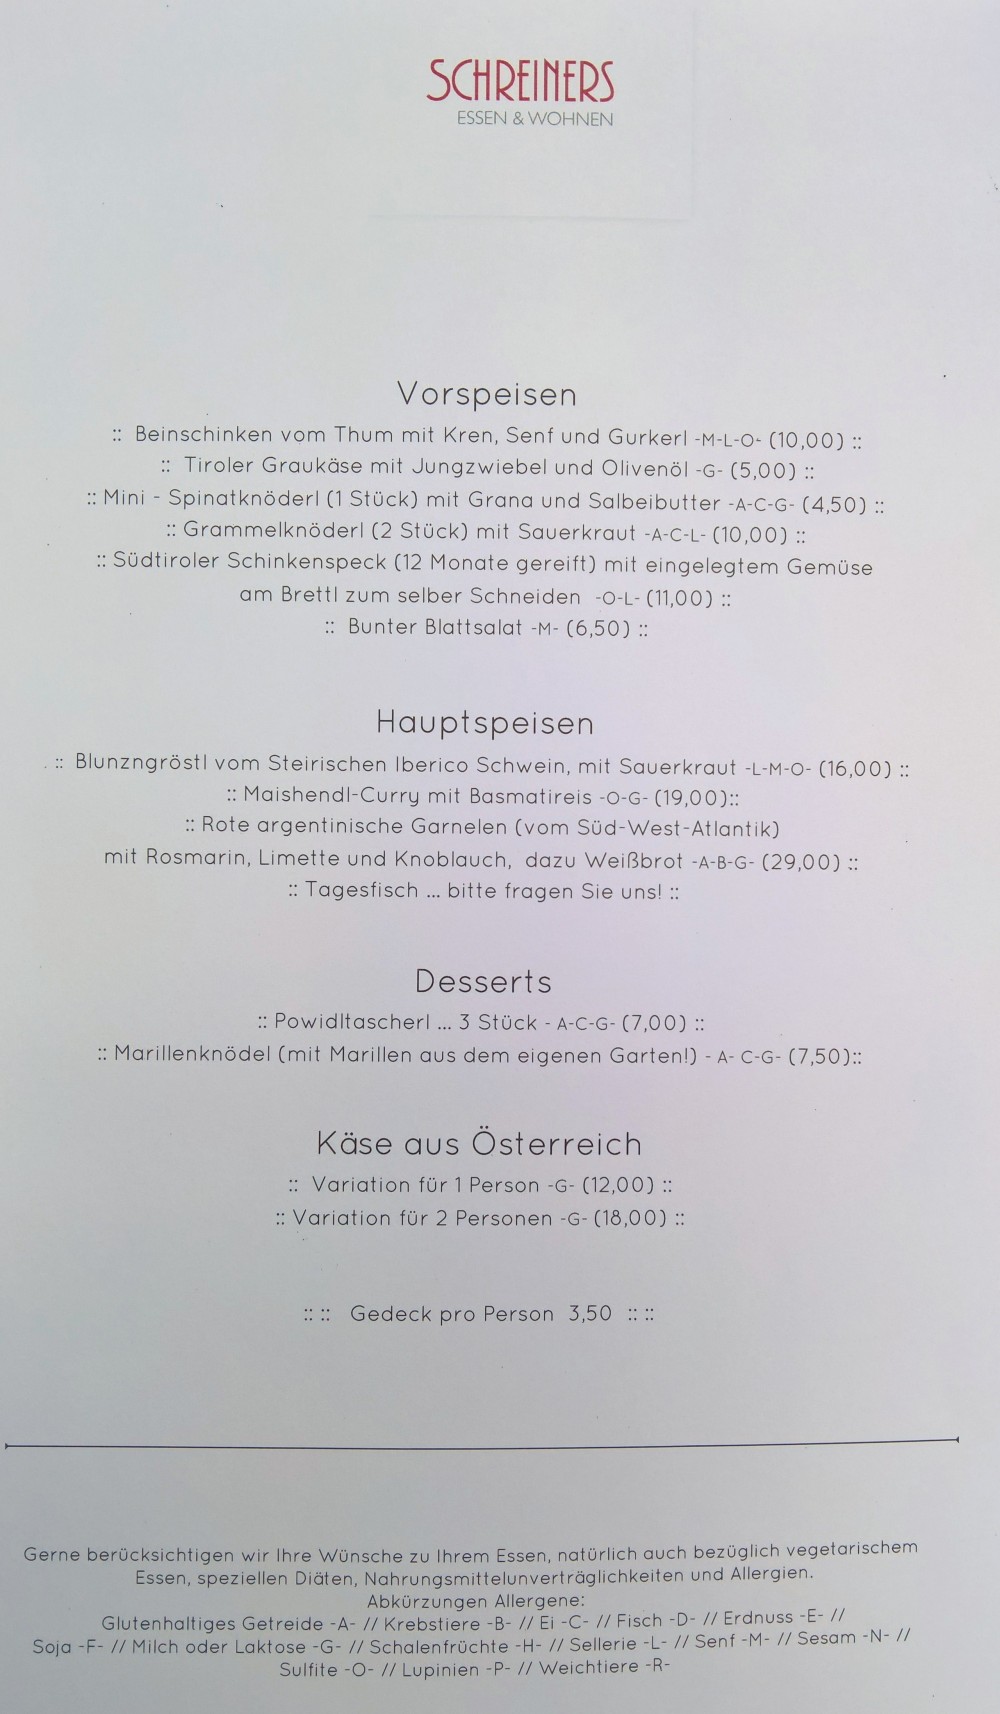 Schreiner’s Gastwirtschaft - Wien